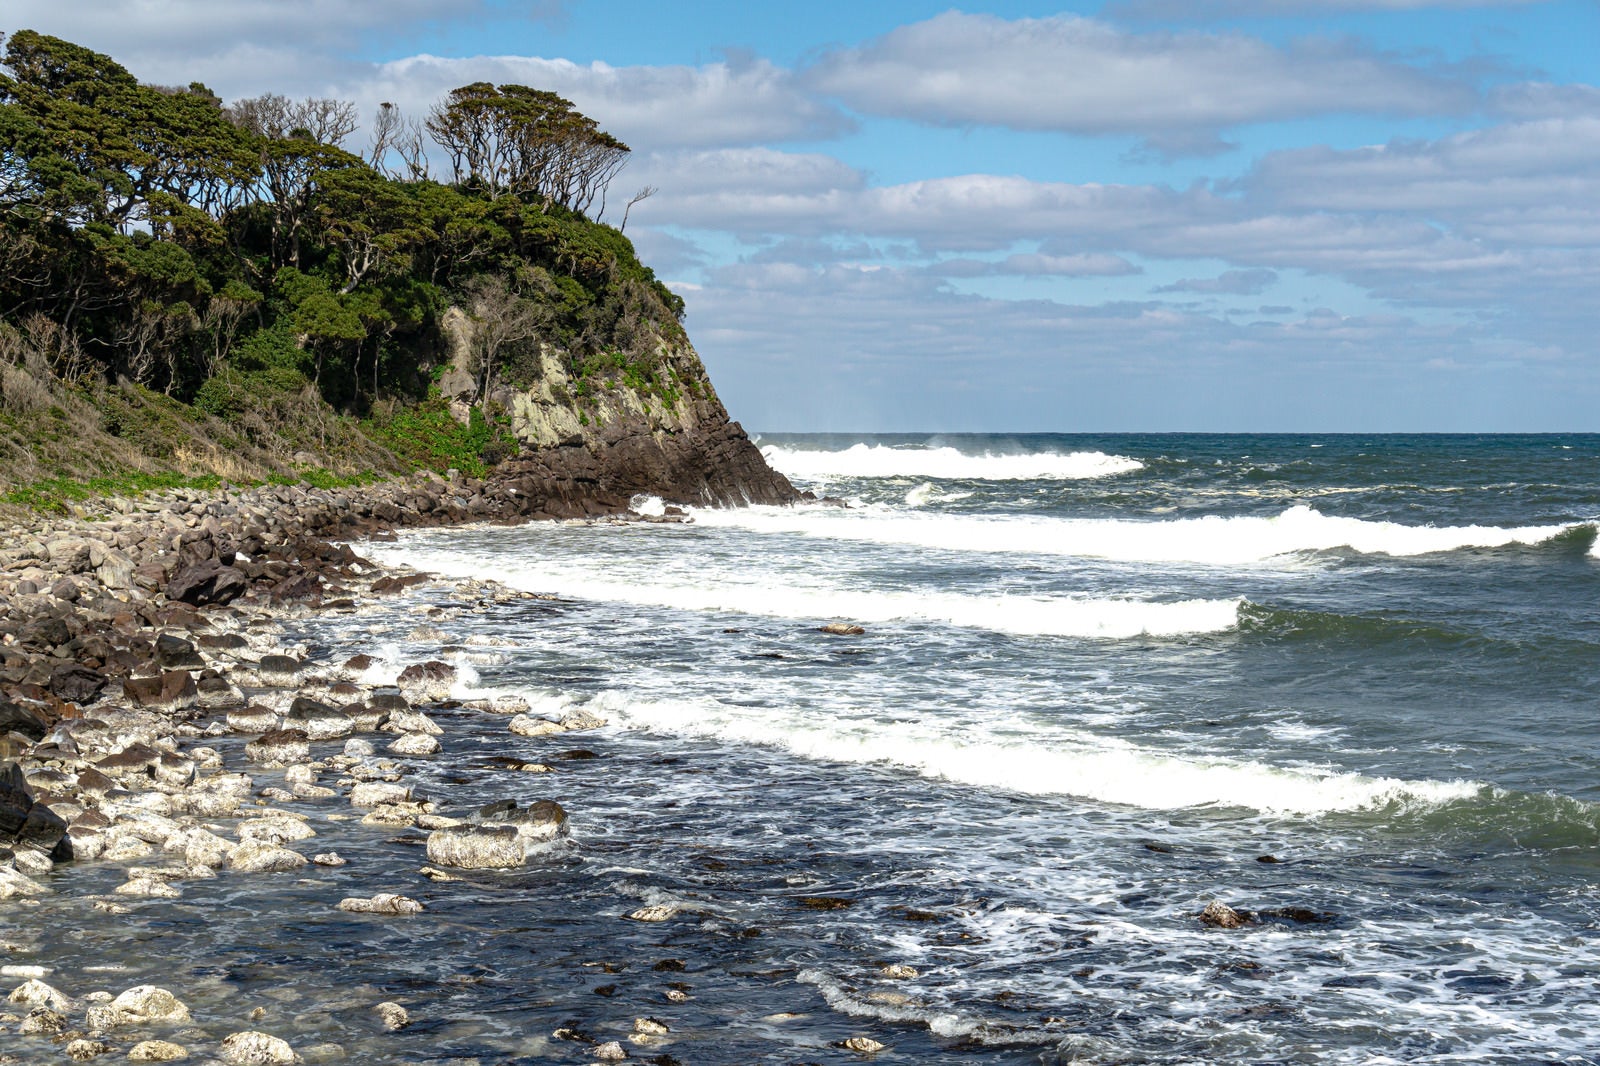 「次々に白波が打ち寄せるゴツゴツとした岩が並ぶ雄島の海岸」の写真